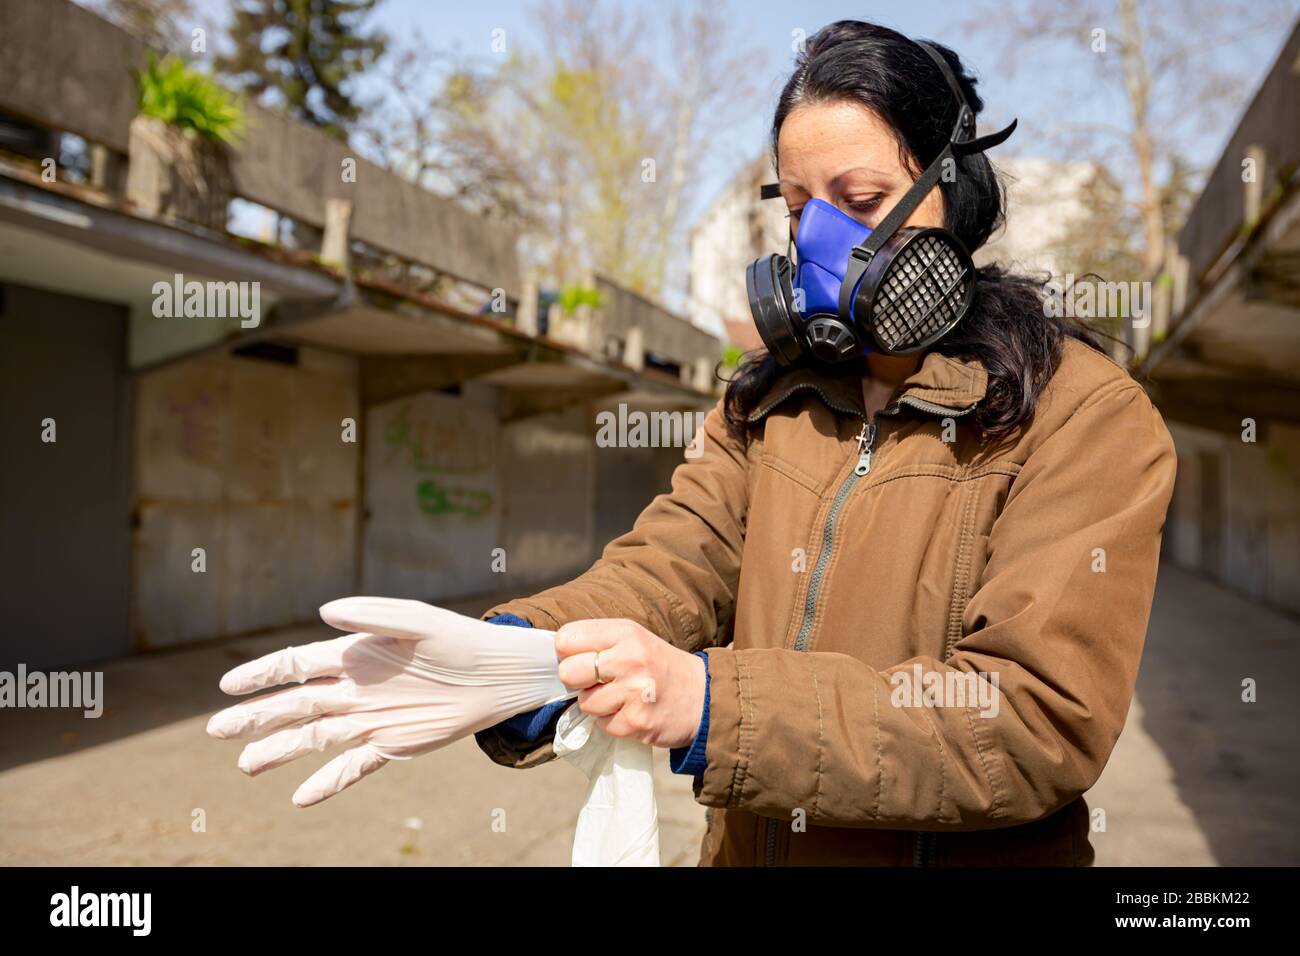 Femme avec masque filtrant sur son visage met des gants en caoutchouc sur  ses mains pour la protection contre le virus COVID-19, Corona Photo Stock -  Alamy